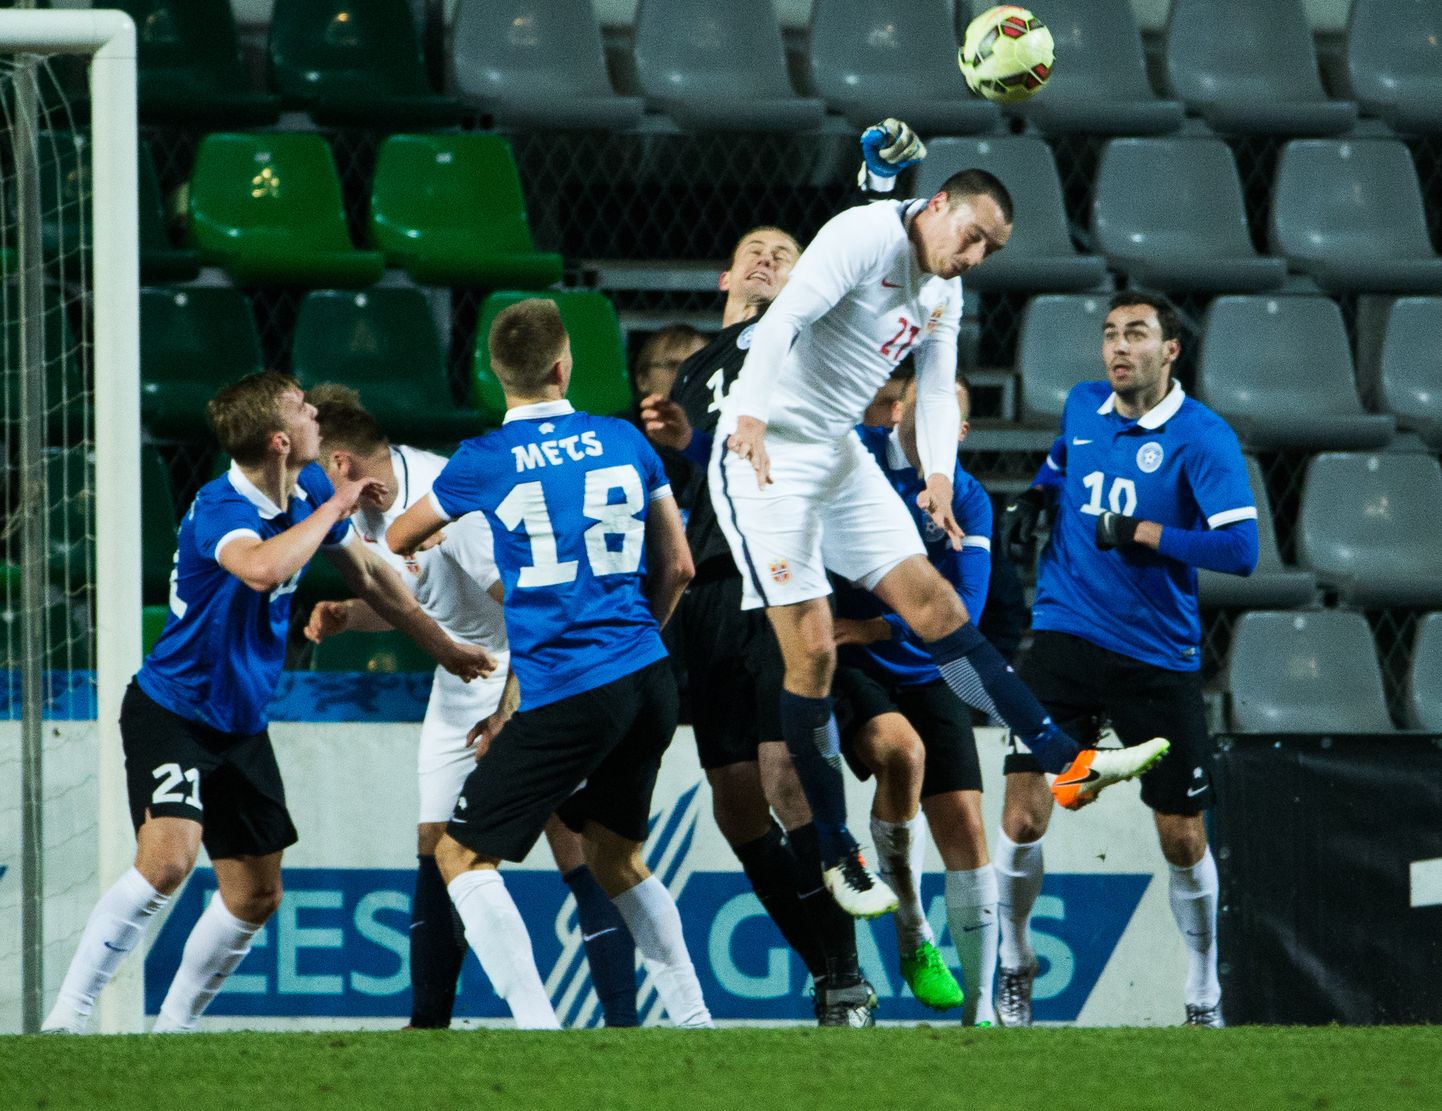 24. märtsil 2016. aastal Tallinnas peetud Eesti - Norra sõpruskohtumises oli Forren (nr 21 - valges) platsil üks ohtlikumaid norralasi. Mäng lõppes toona 0:0.